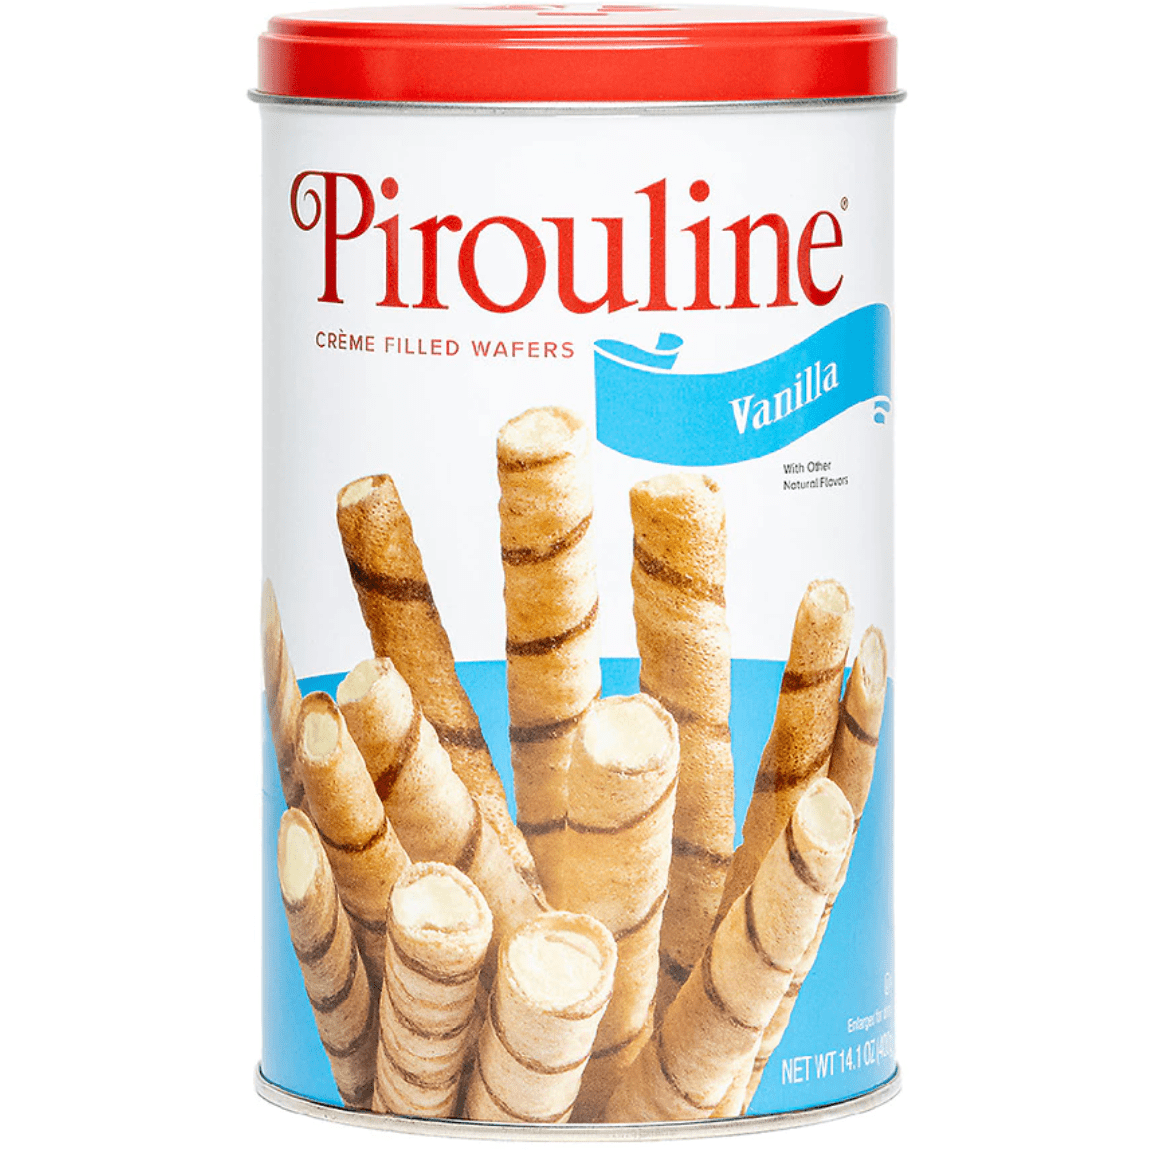 Pirouline: Dessert Wafers